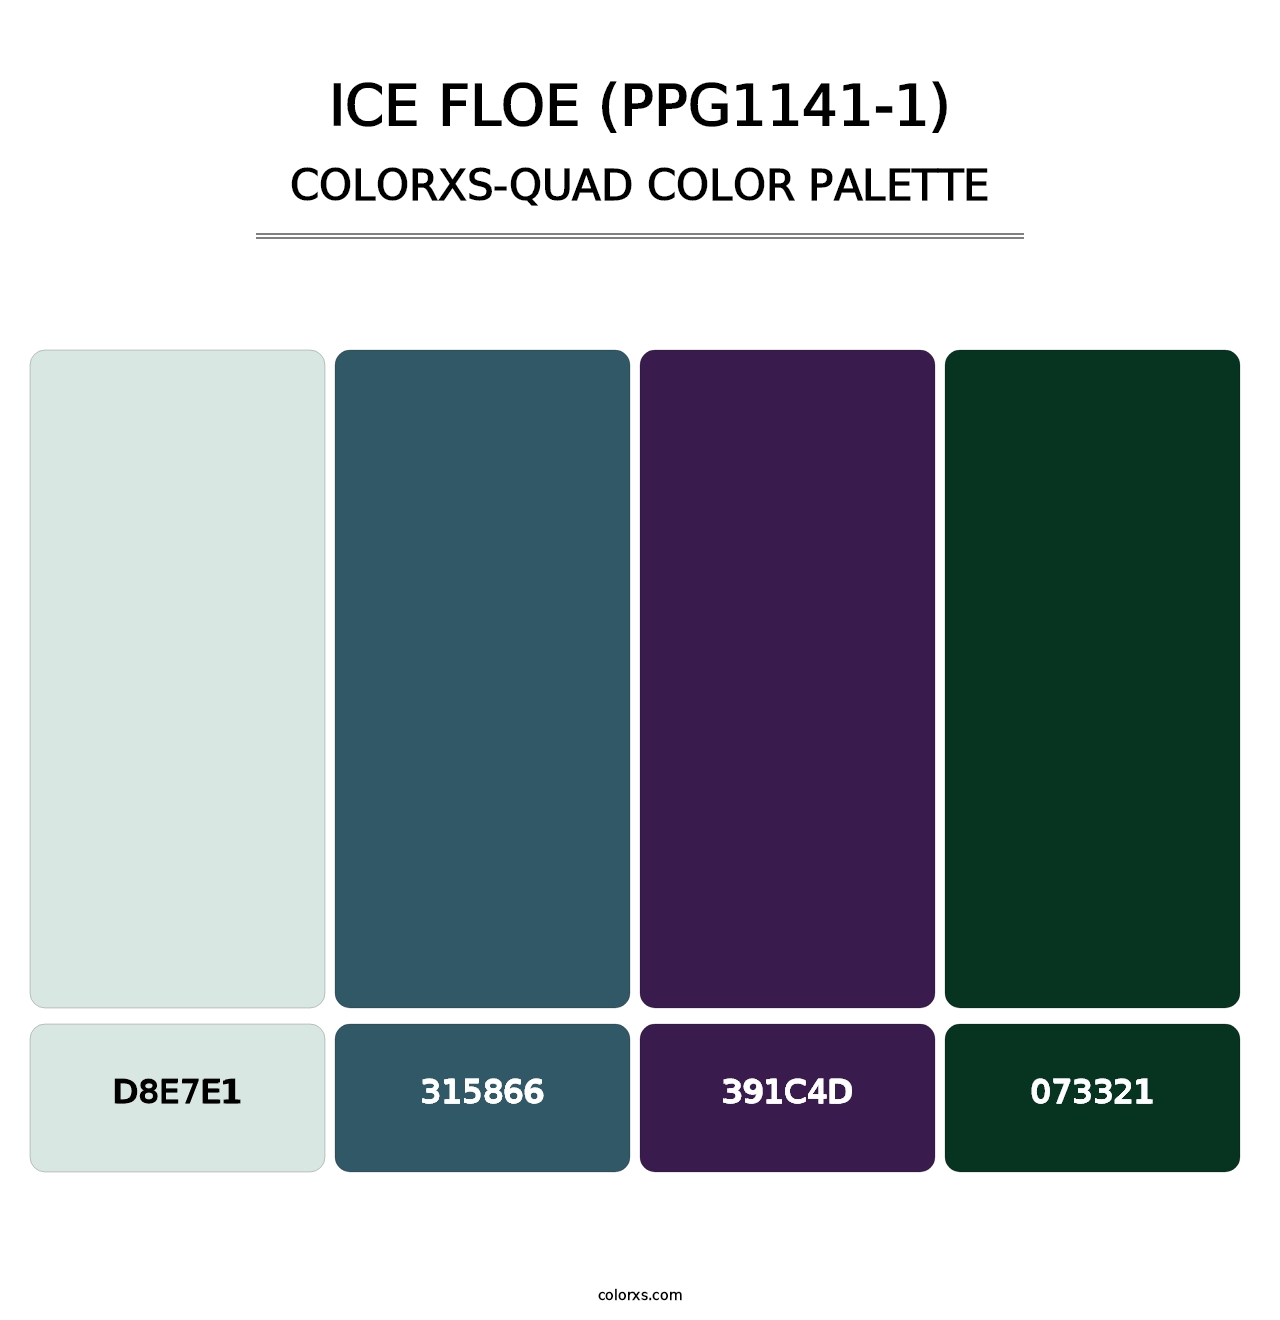 Ice Floe (PPG1141-1) - Colorxs Quad Palette